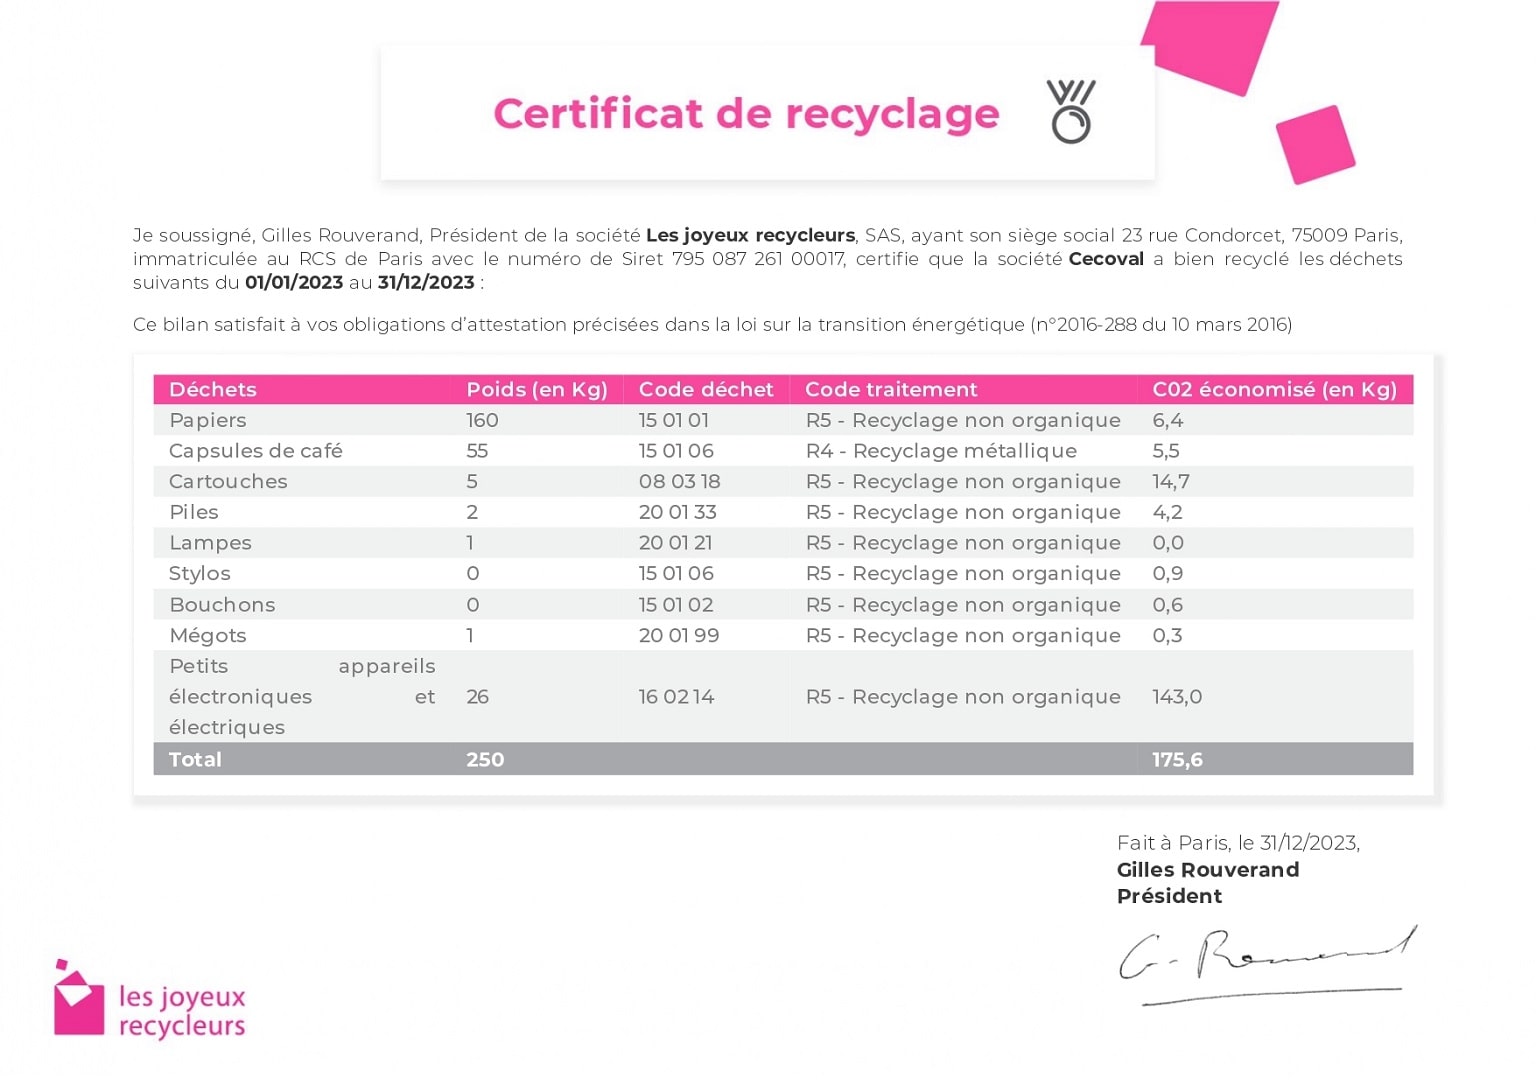 Certificat de recyclage Cecoval 2023 délivré par les Joyeux recycleurs